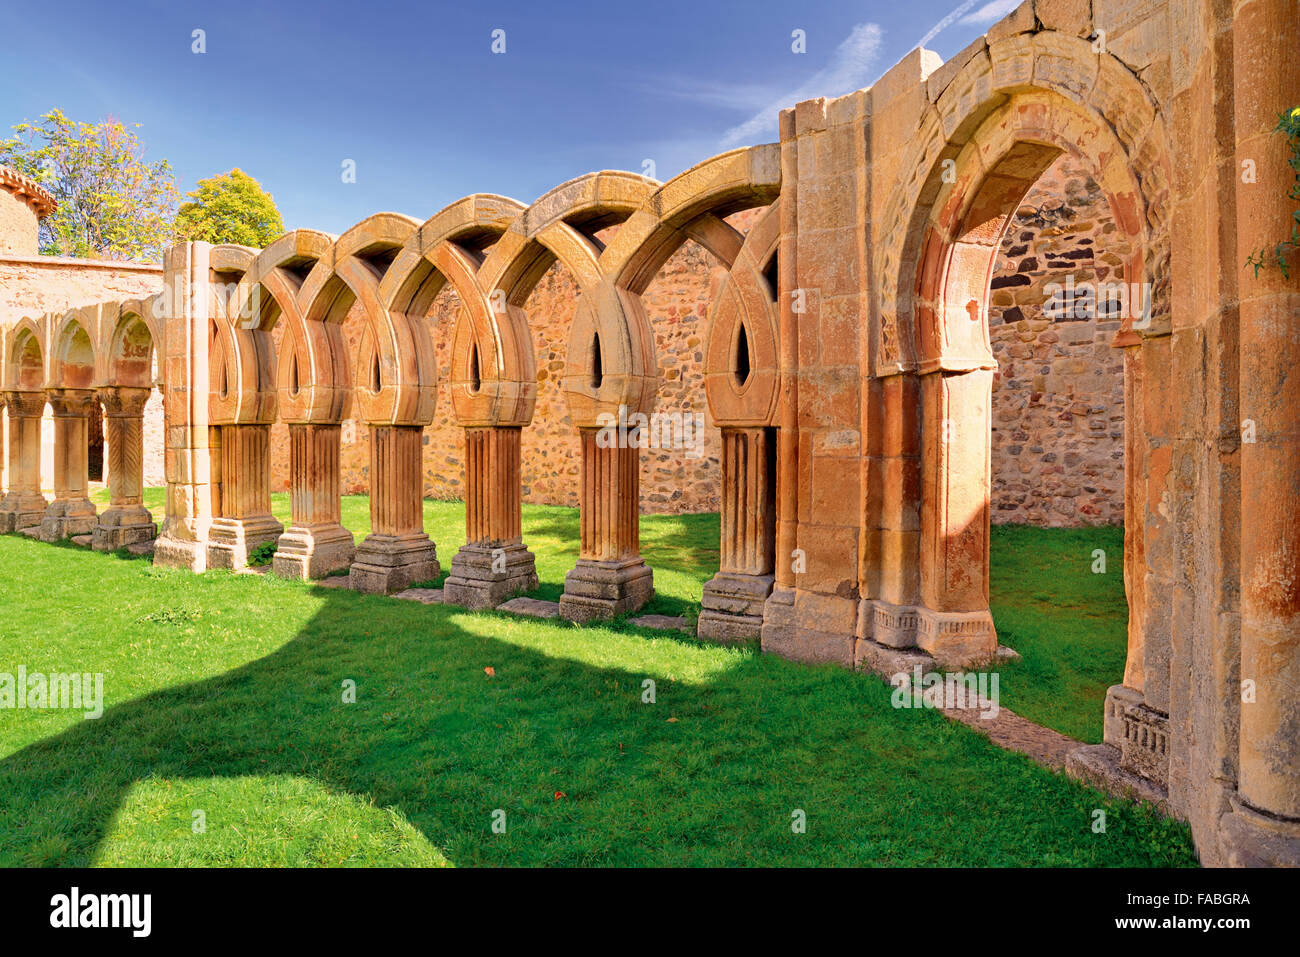 Spanien, Castilla-León: Medievale chiostro del Monastero di San Juan de Duero Foto Stock